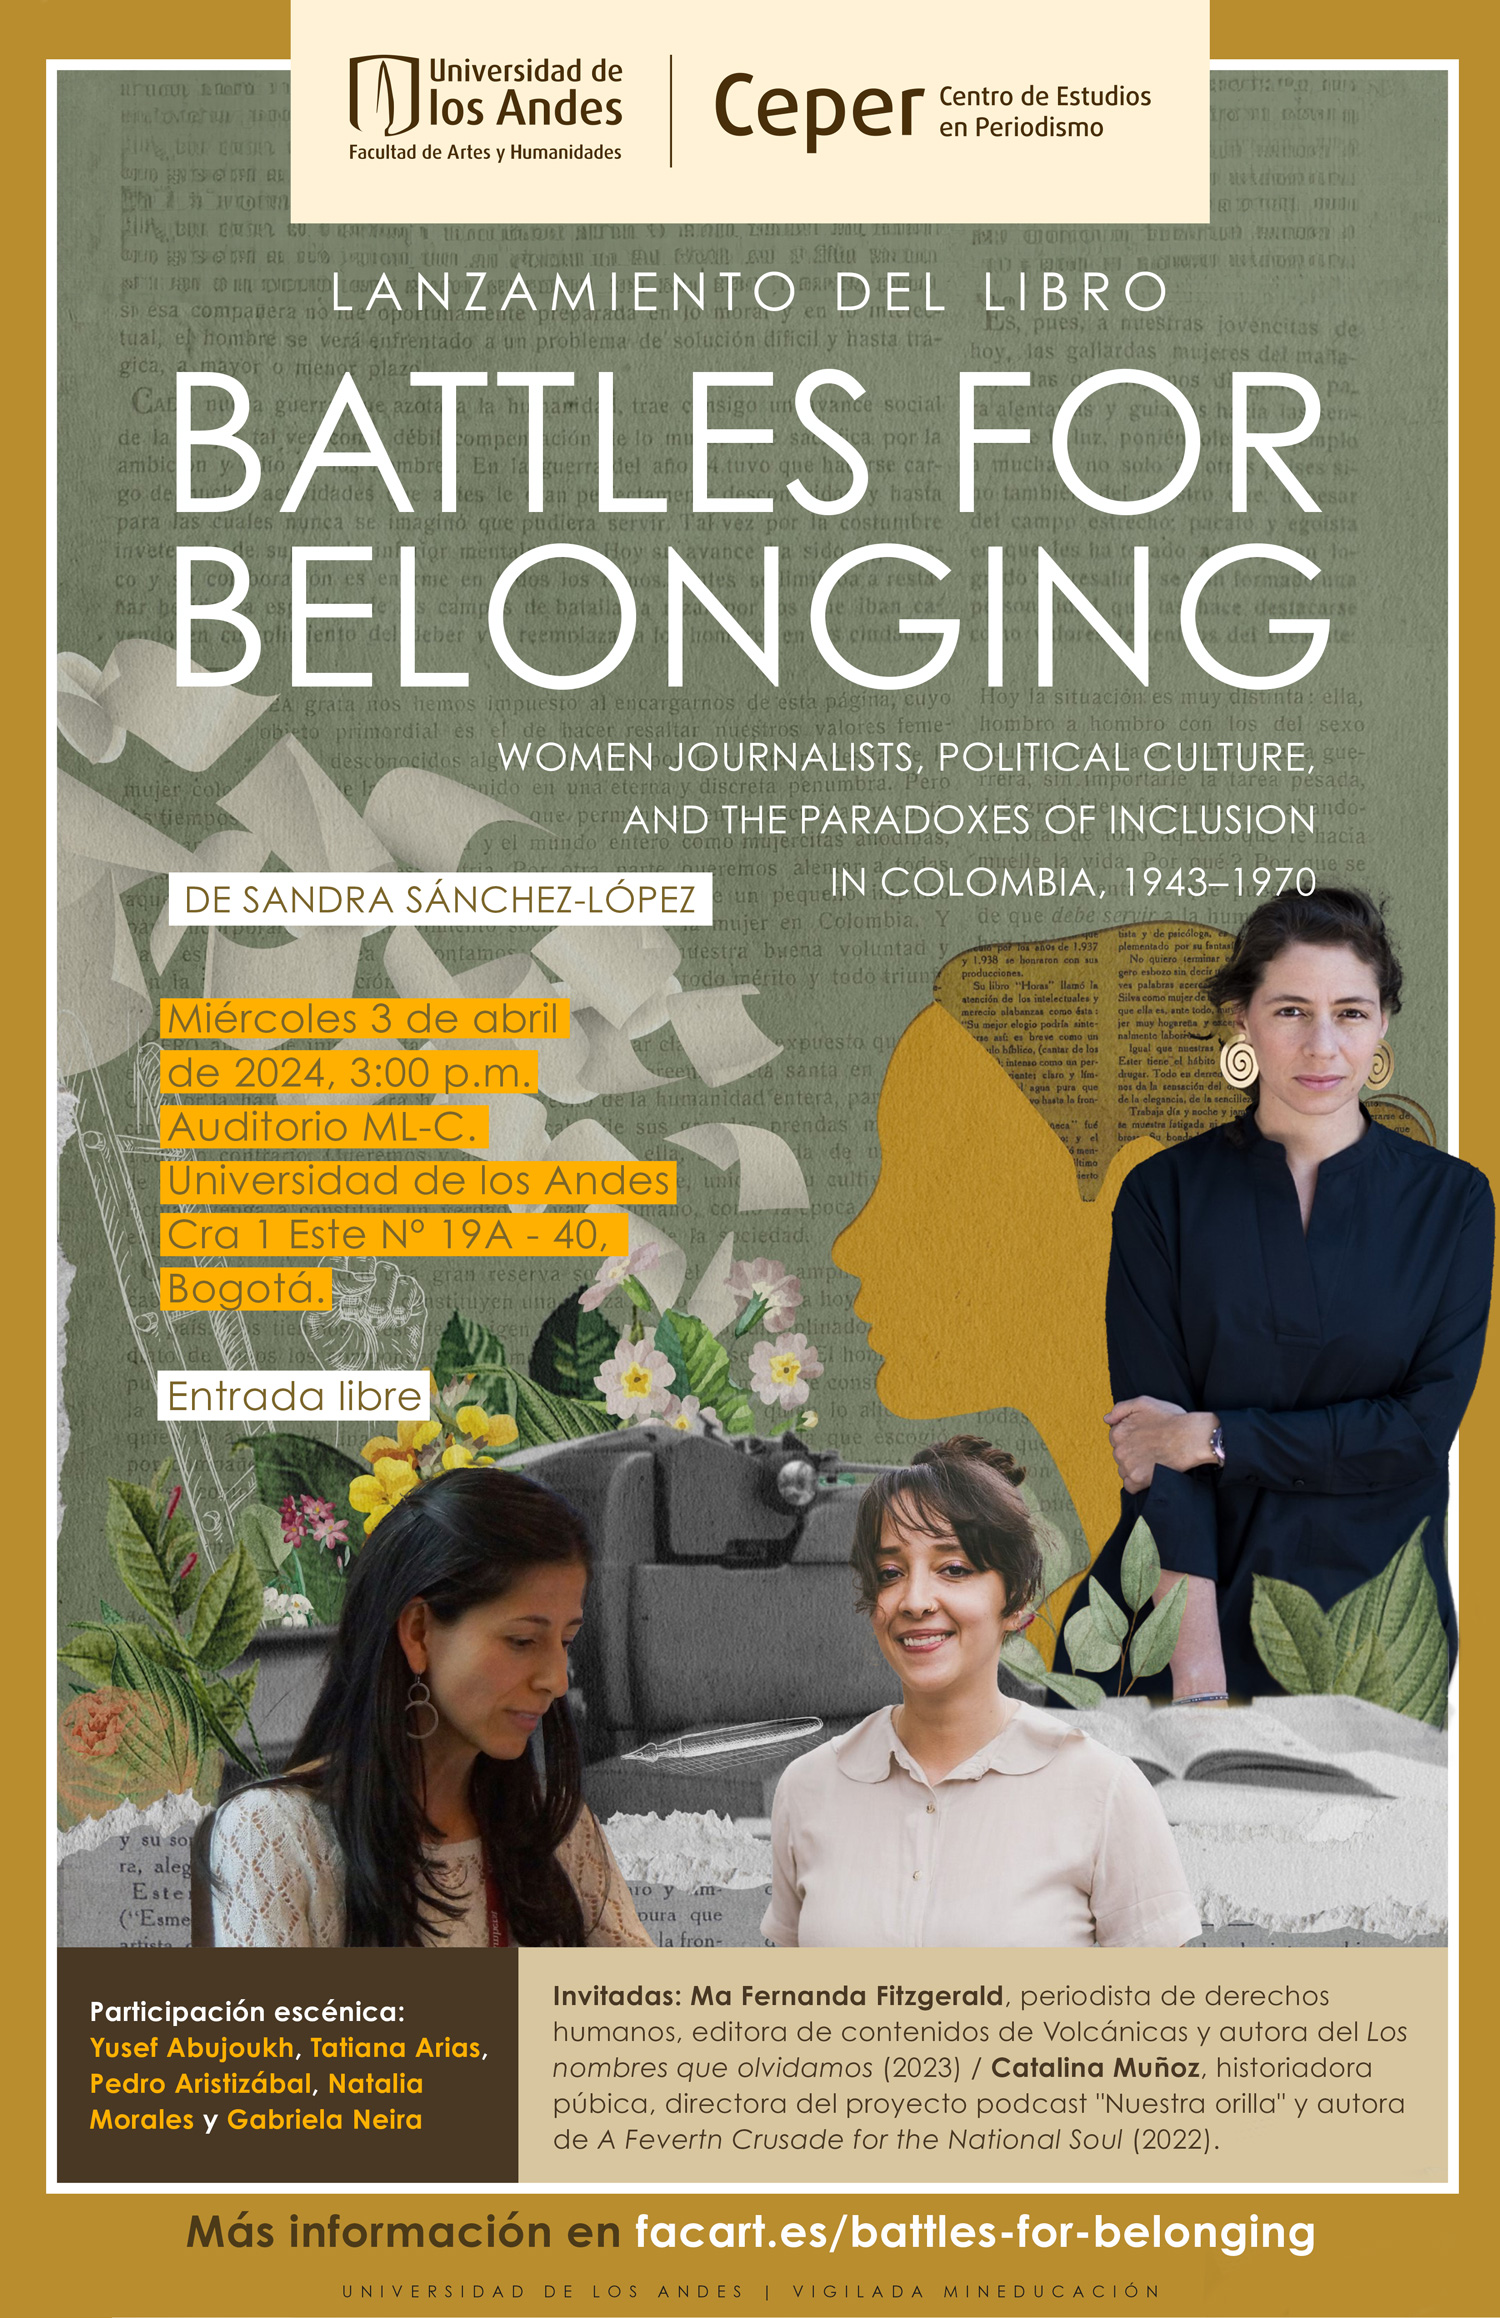 Lanzamiento del libro Battles for Belonging de Sandra Sánchez